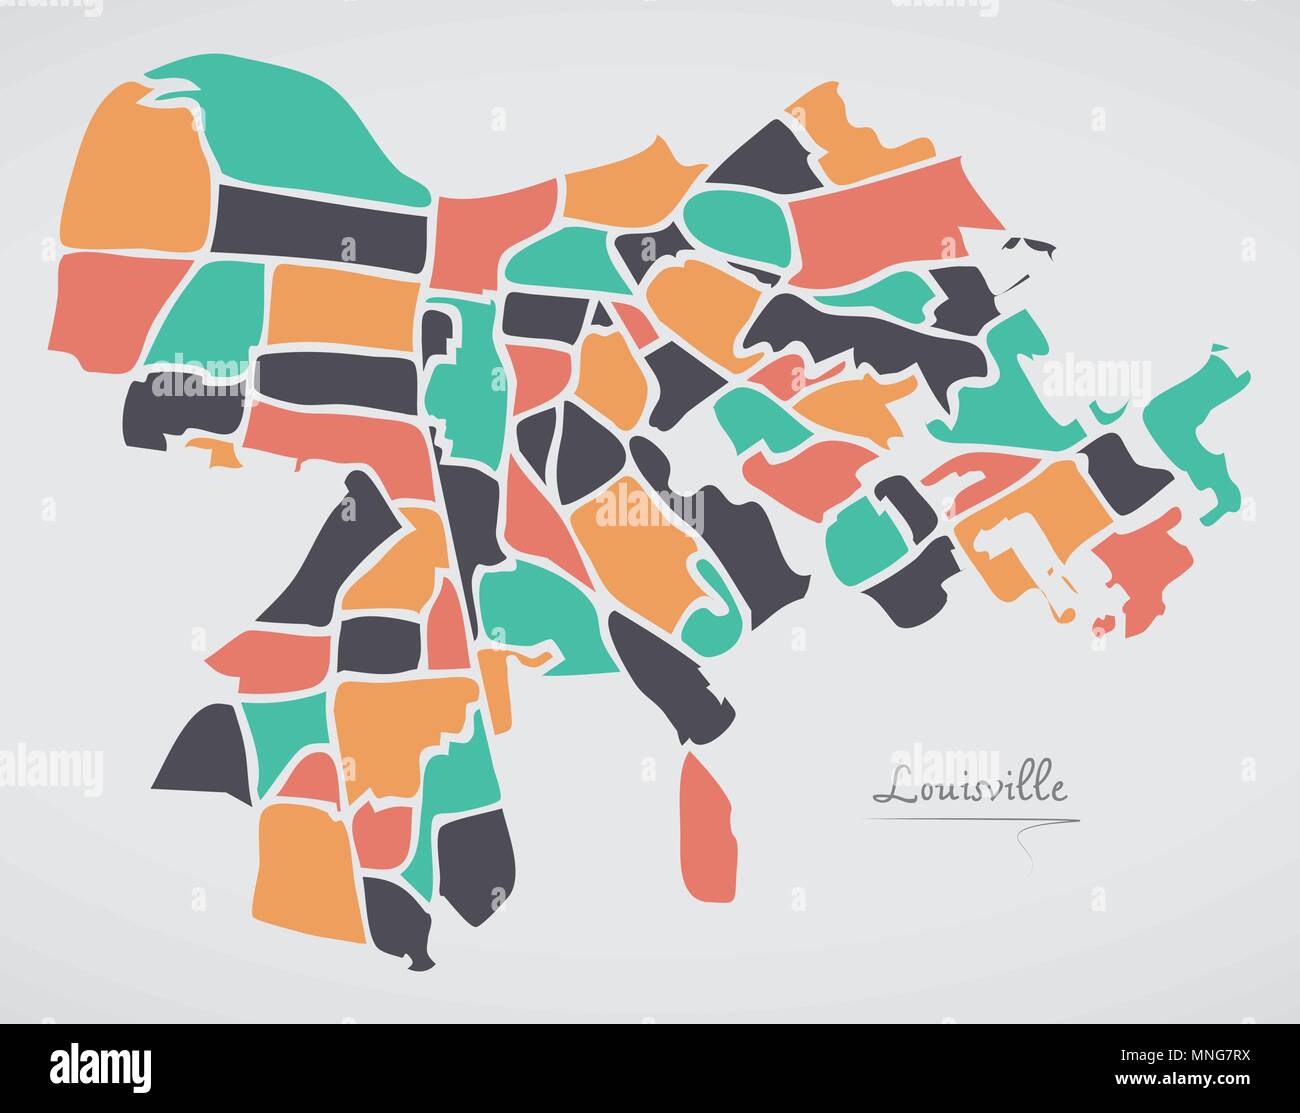 Louisville Kentucky mappa con i quartieri e di moderne forme rotonde Illustrazione Vettoriale